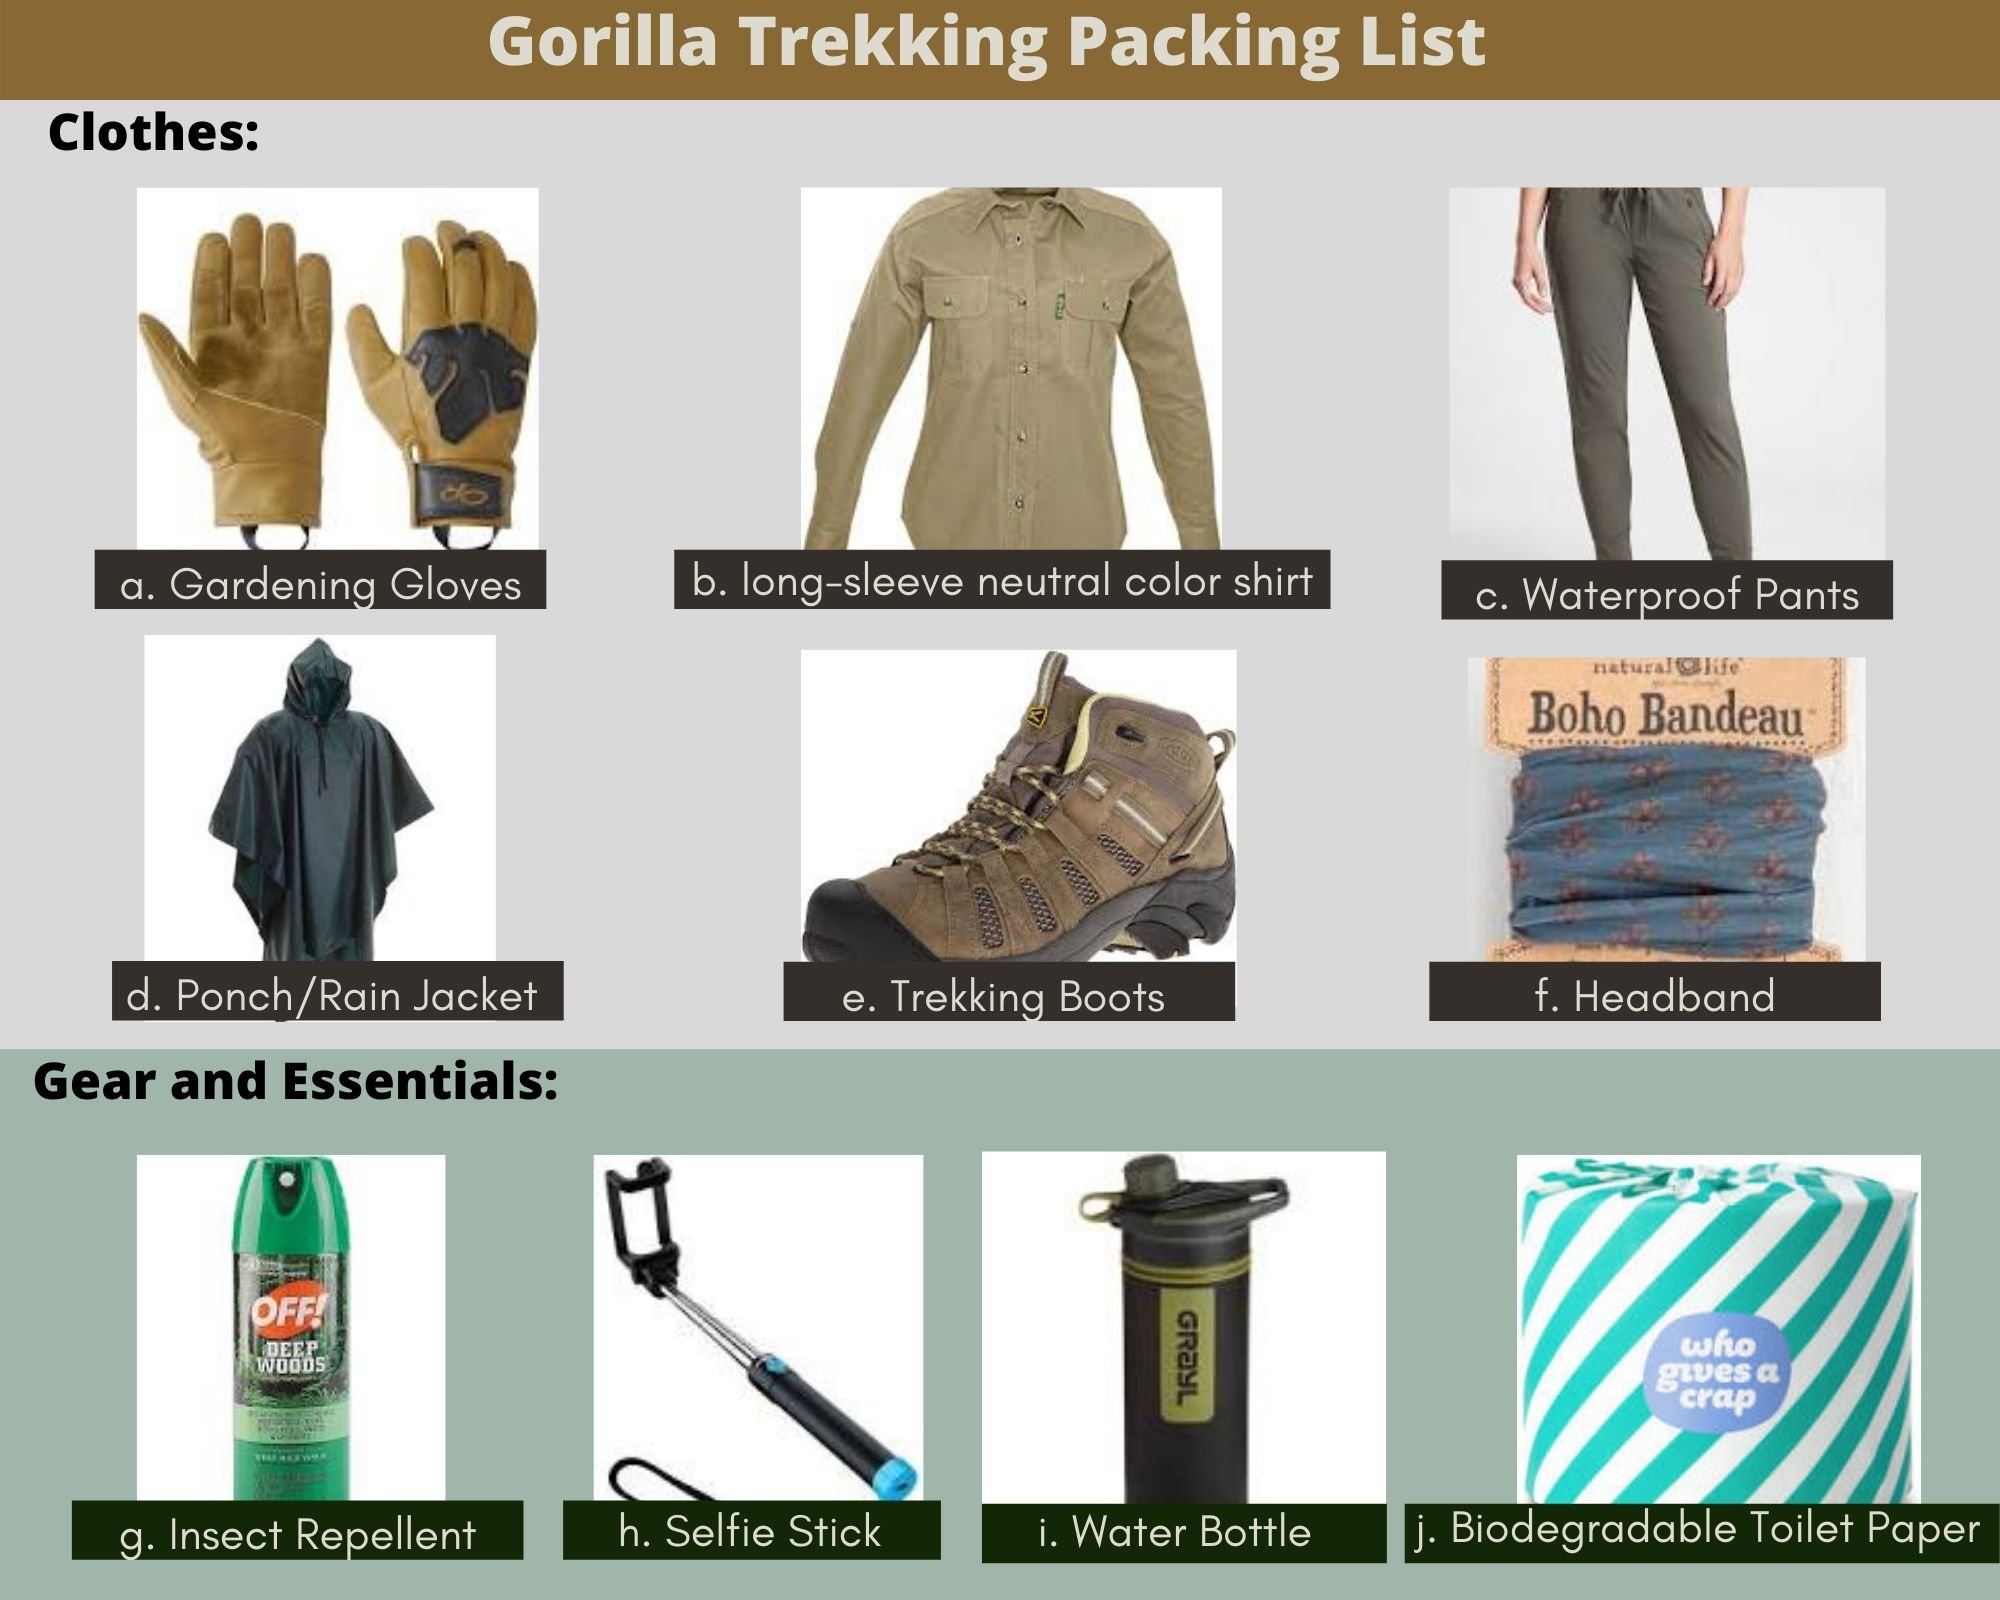 Rent Trekking Gear  Get Quality Hiking Equipment - Trekup